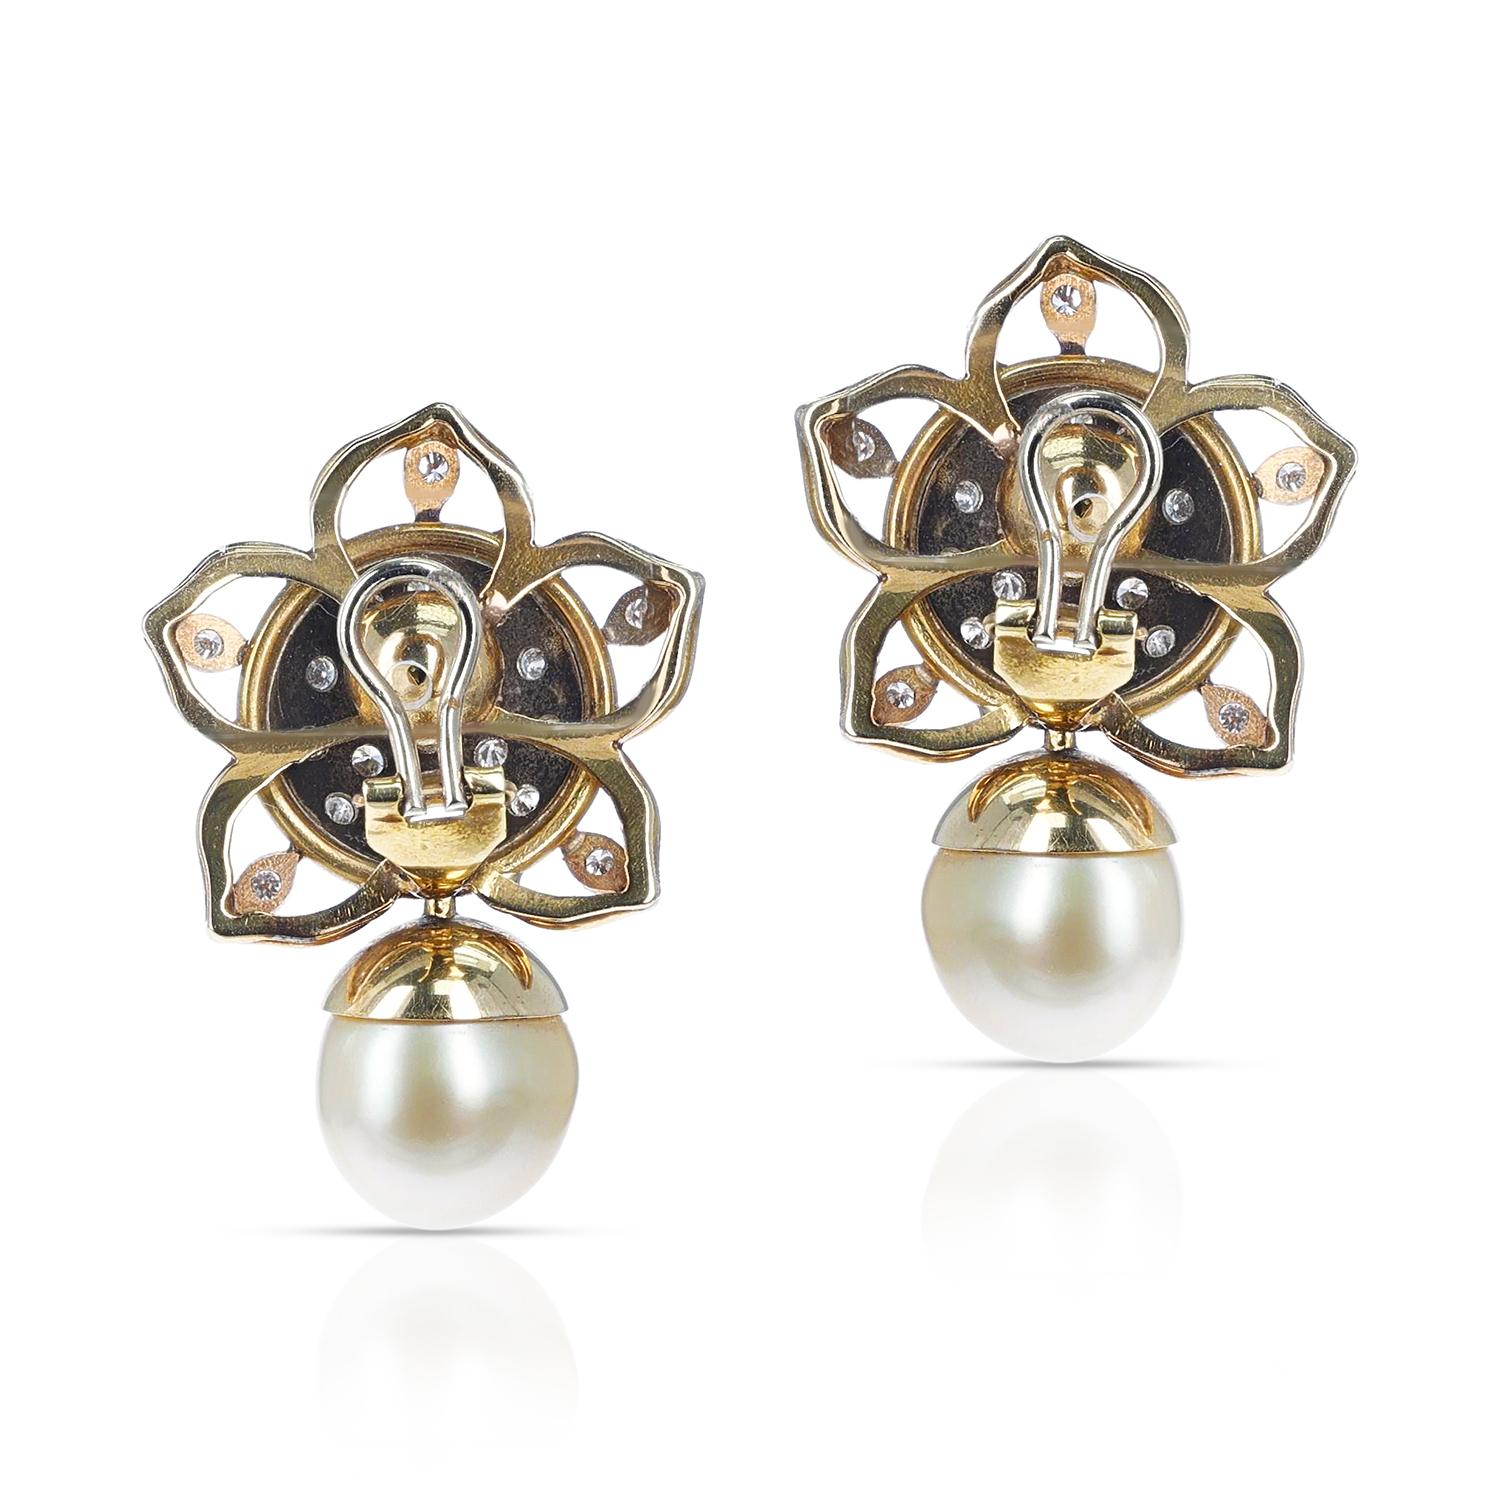 Ein Paar Perlen- und Diamant-Ohrringe. Die Ohrringe sind Clip-ons. Auf Wunsch kann ein Beitrag hinzugefügt werden. Das Gesamtgewicht der Ohrringe beträgt 28,90 Gramm. Die Gesamtlänge beträgt 1,50 Zoll. 